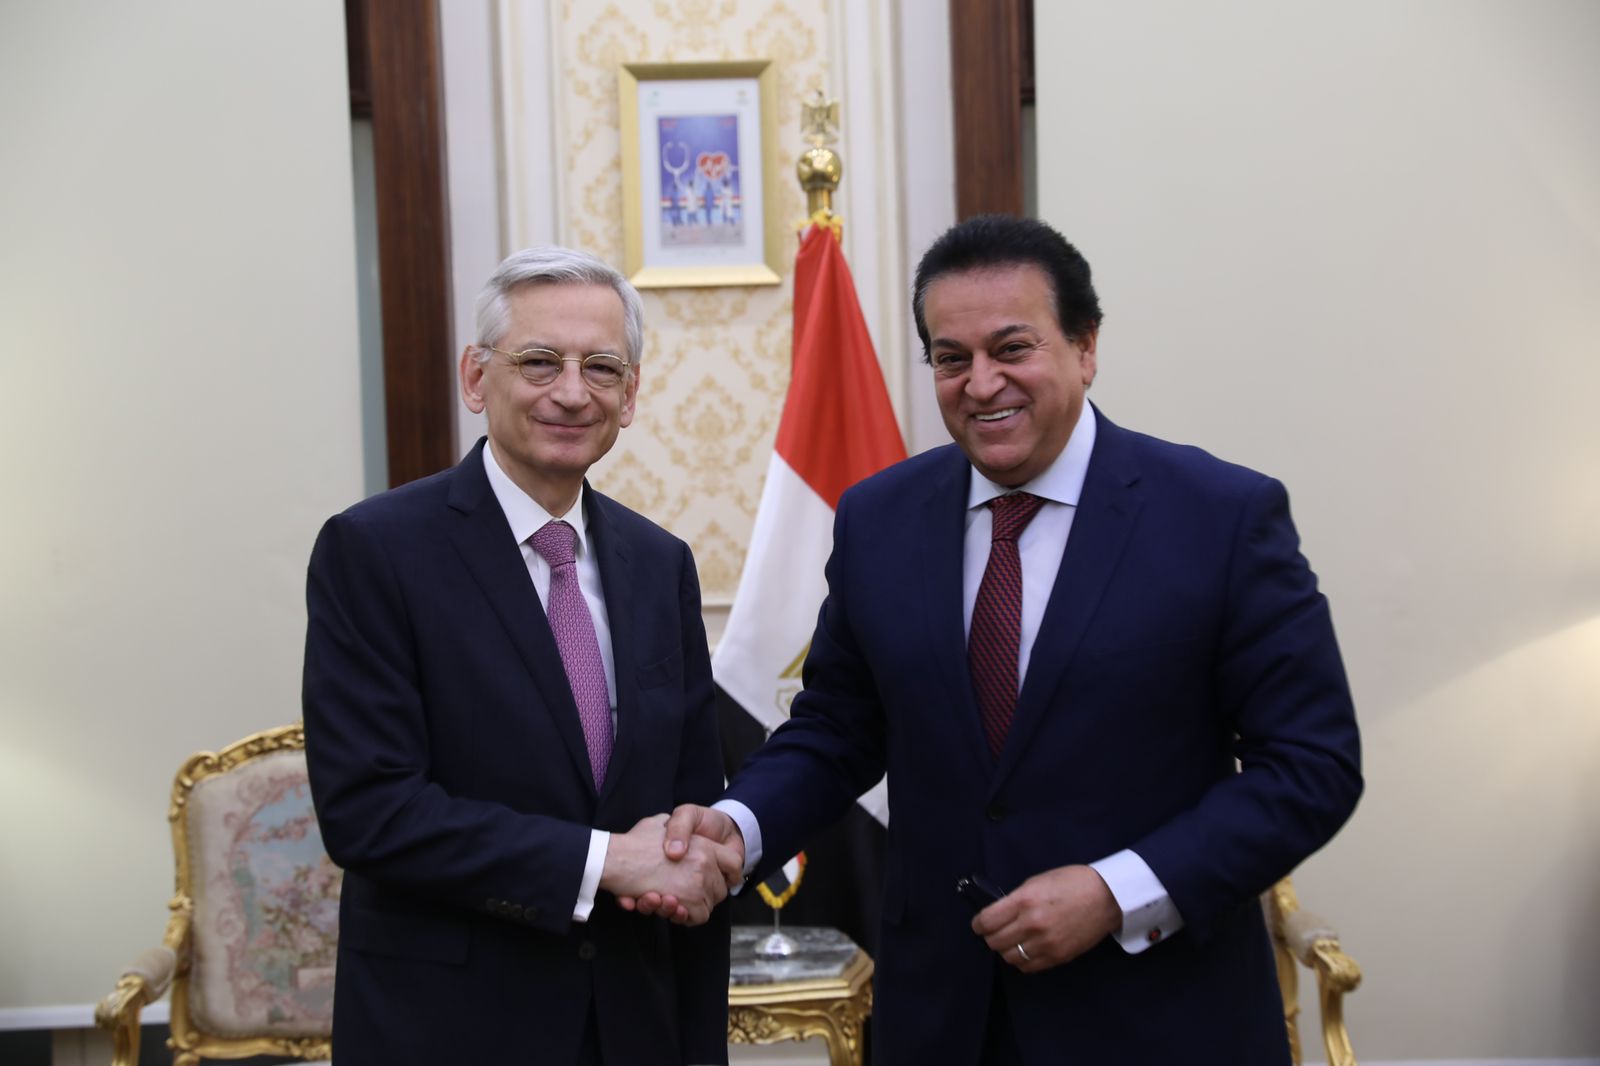 سفير فرنسا مشروعات التعليم في مصر رائدة ونموذج يحتذى به على مستوى منطقة الشرق الأوسط | صور